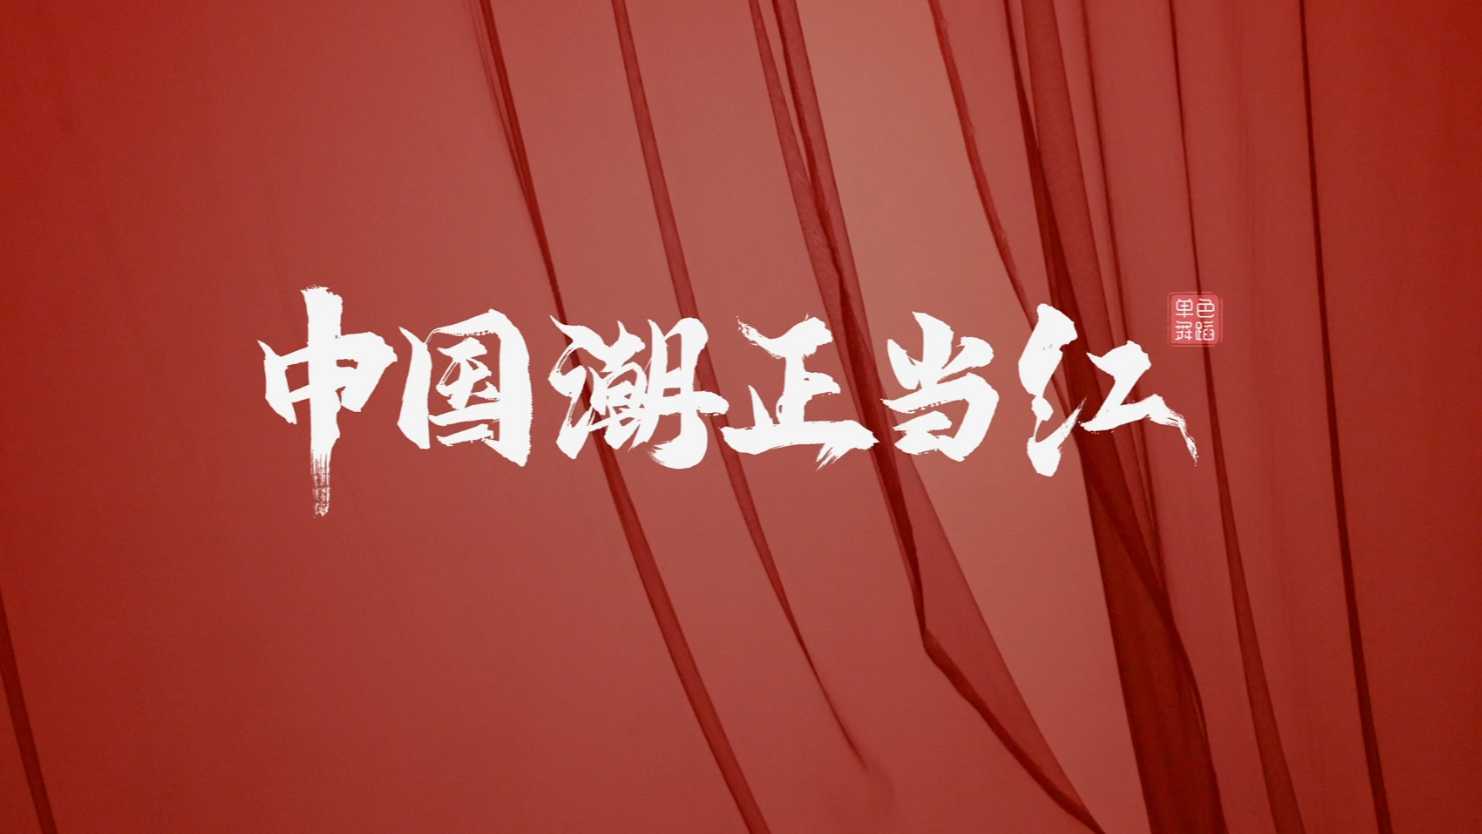 单色舞蹈(武汉)全舞种导师展示《中国潮·正当红》-程钢